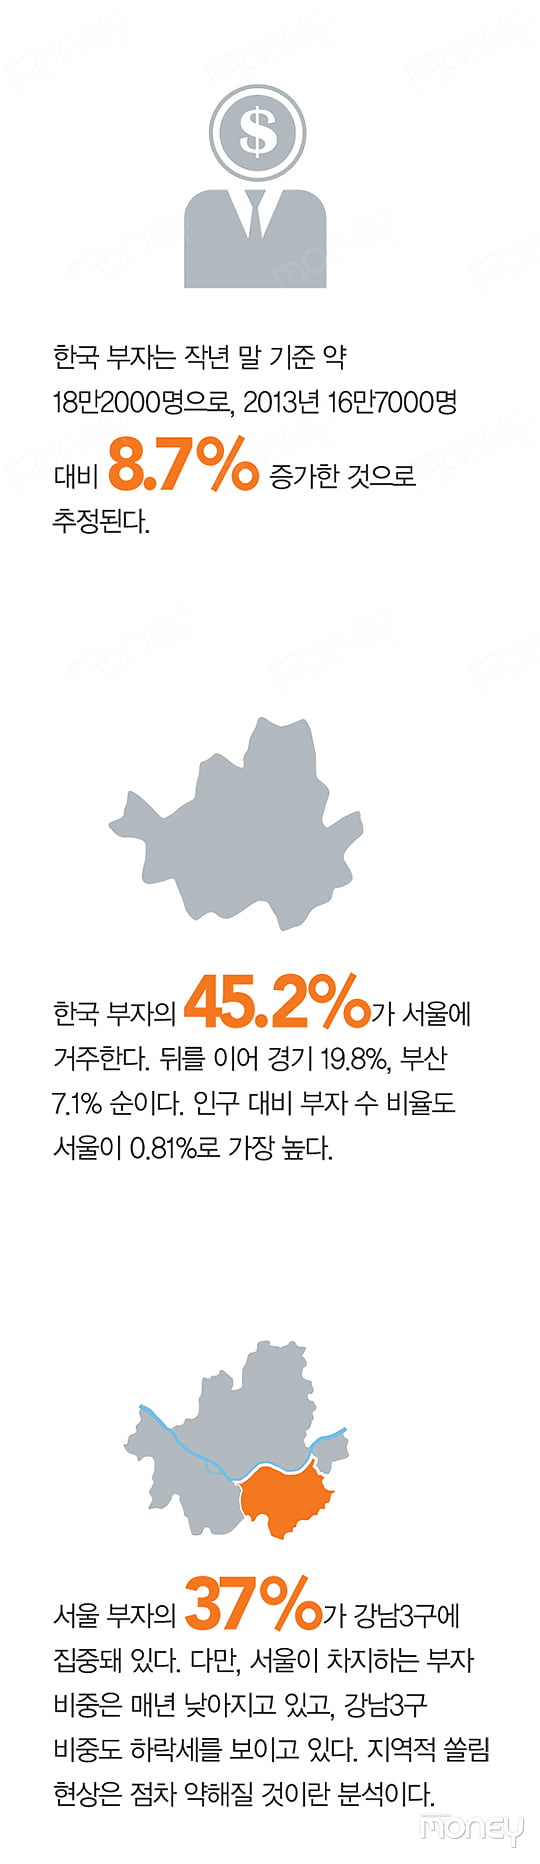 [The Stats] 한국 부자들은 무엇을 걱정하나